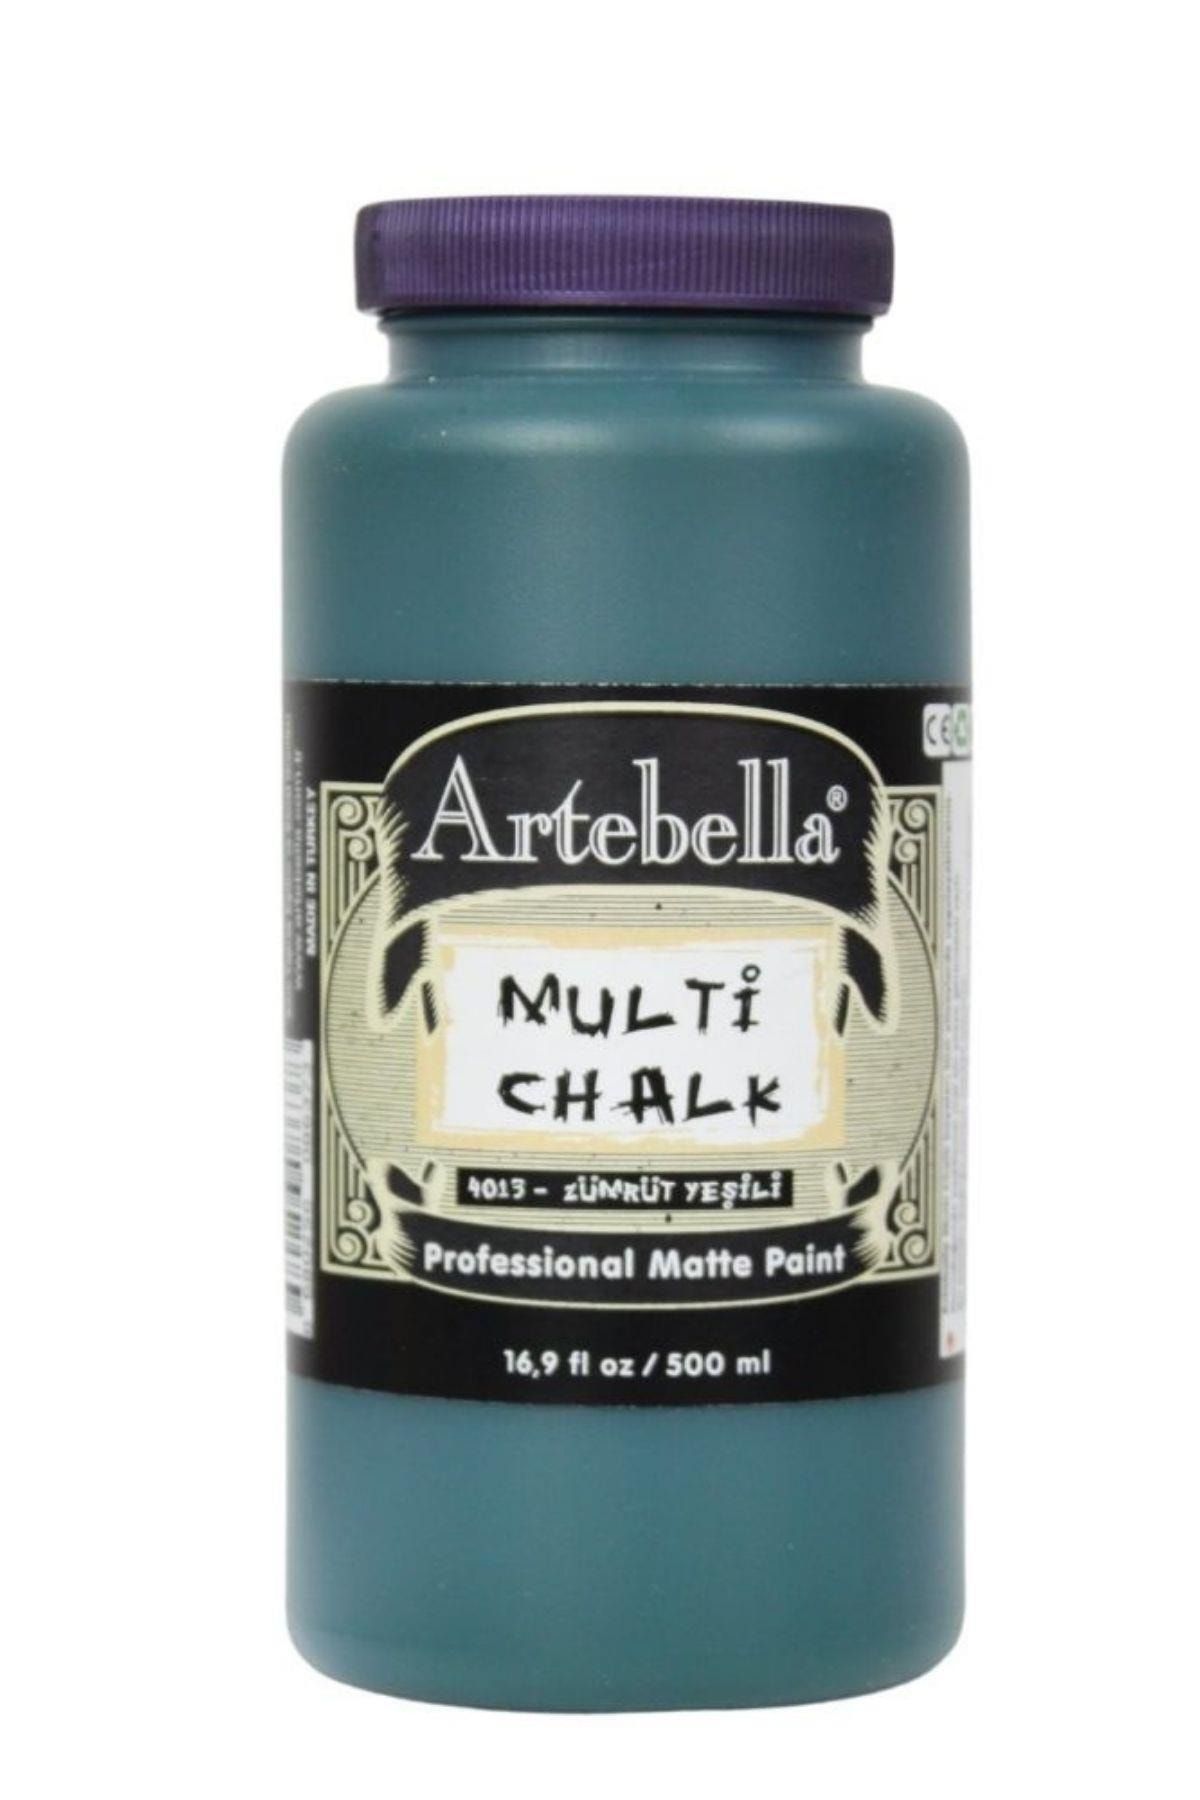 Artebella Multi Decor Chalked Boya 4012 Zümrüt Yeşili 500 ml